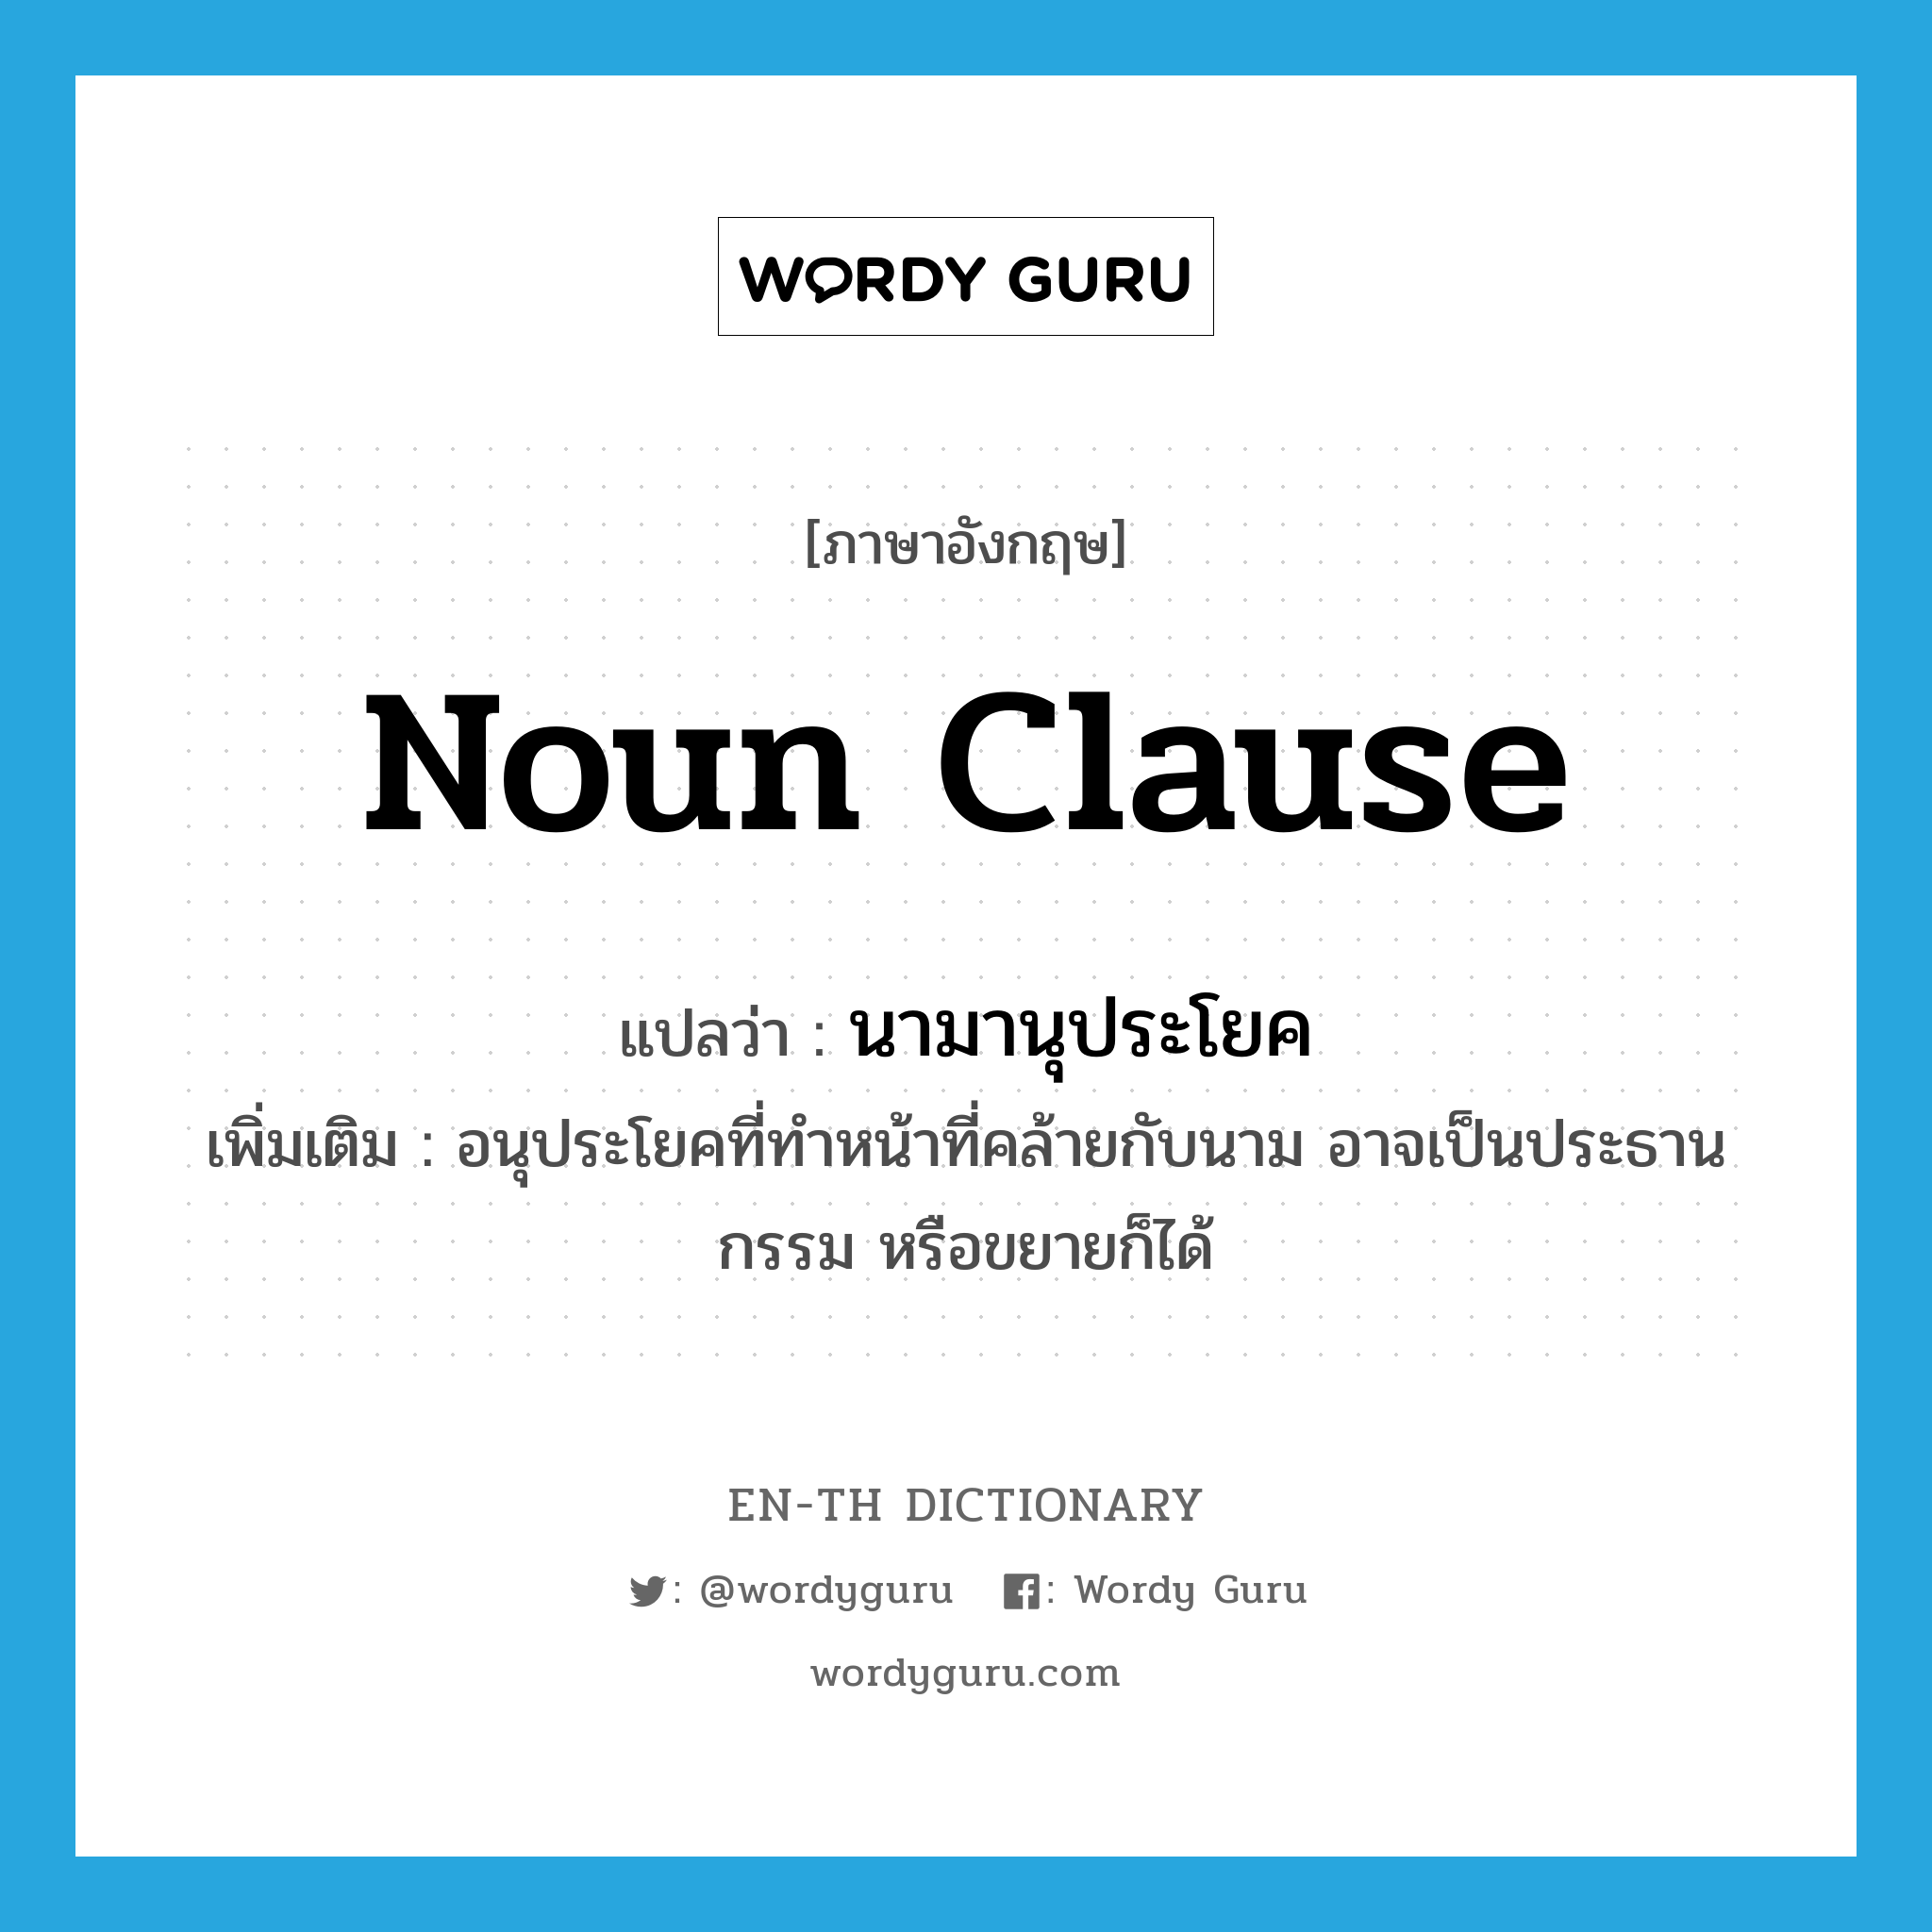 noun clause แปลว่า?, คำศัพท์ภาษาอังกฤษ noun clause แปลว่า นามานุประโยค ประเภท N เพิ่มเติม อนุประโยคที่ทำหน้าที่คล้ายกับนาม อาจเป็นประธาน กรรม หรือขยายก็ได้ หมวด N